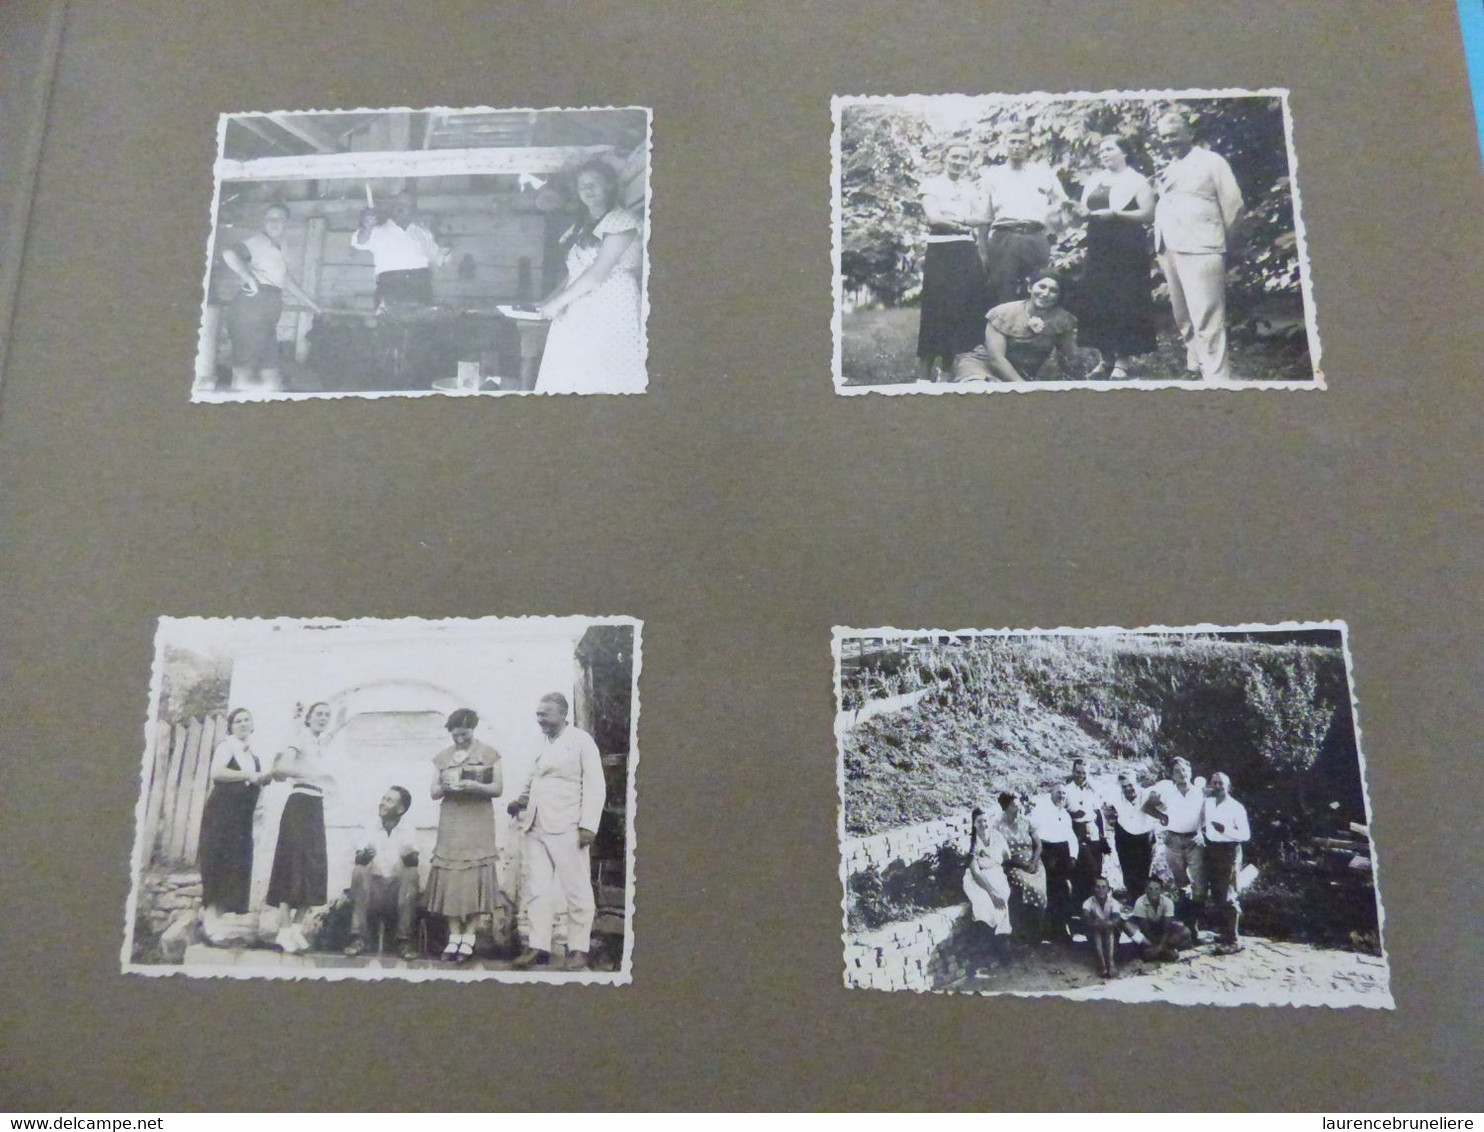 MISSION GEOLOGIQUE  KURUGA PRES DE BOR (SERBIE)   NOVEMBRE 1934 -  André LAUNAY INGENIEUR DES MINES  A SAINT-NAZAIRE - Lieux